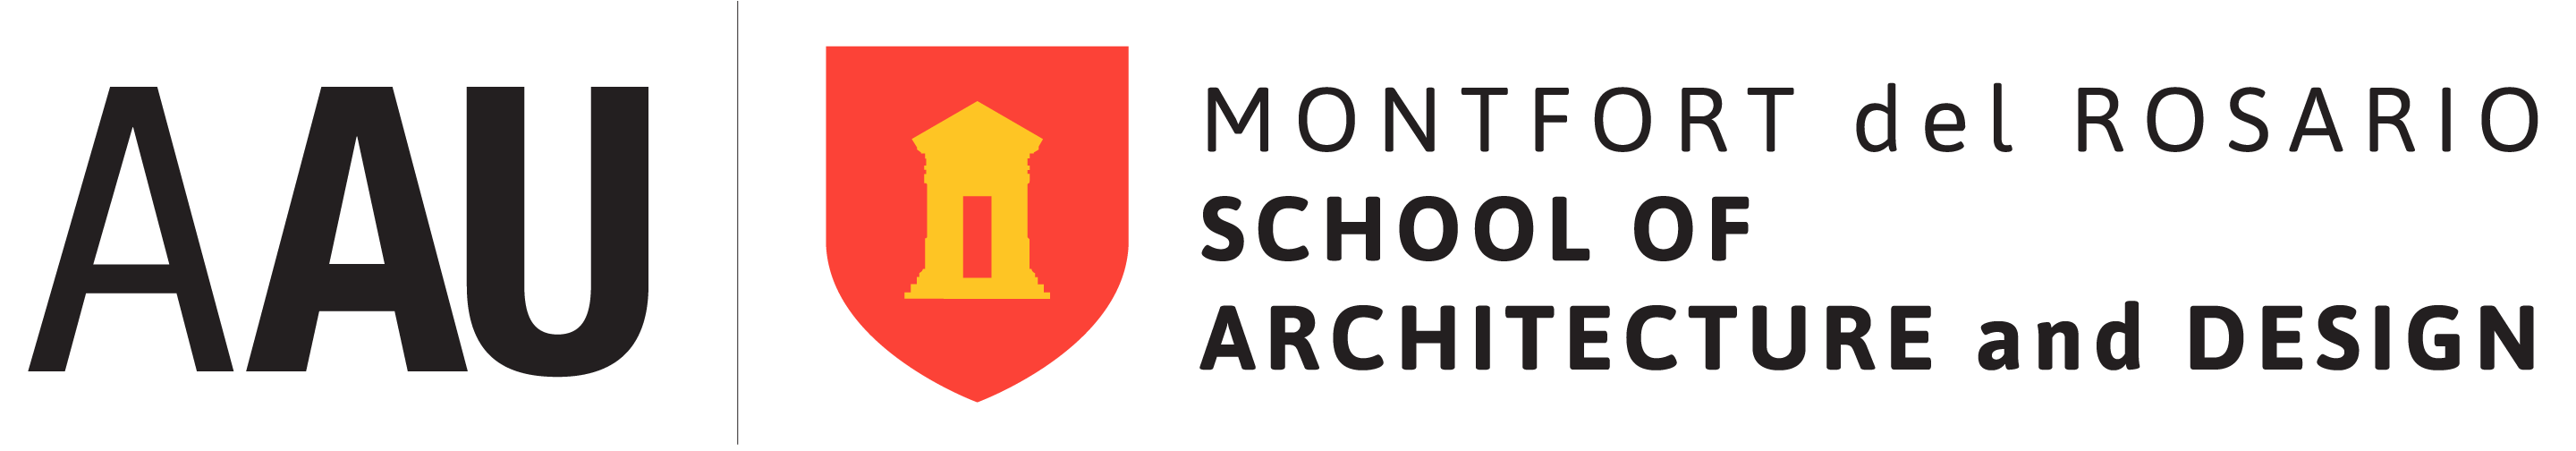 Montfort del Rosario School of Architecture and Design